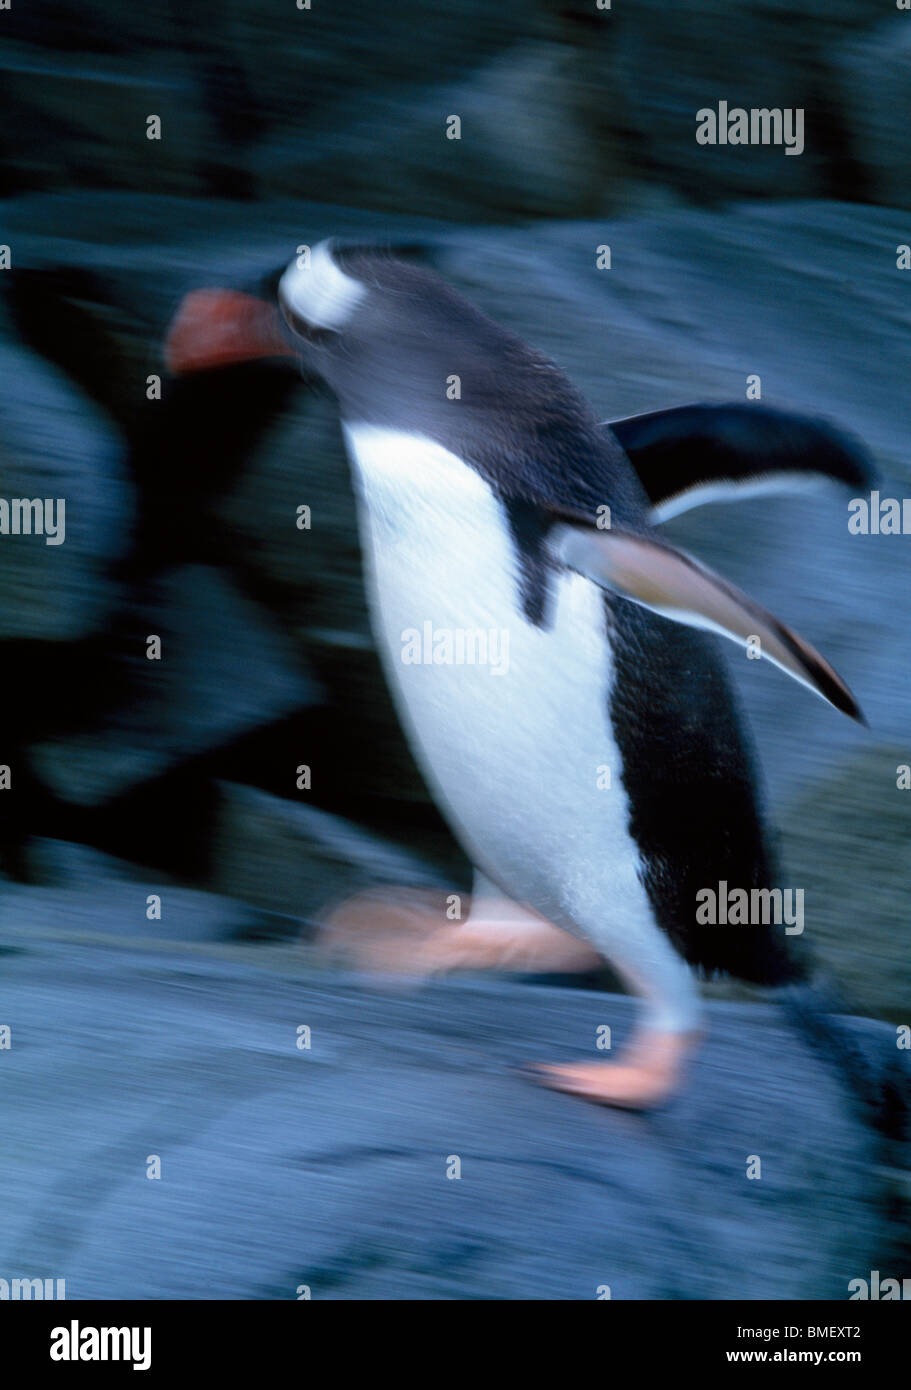 Gentoo penguin walking, slow shutter speed, Wiencke Island, Antarctica Stock Photo